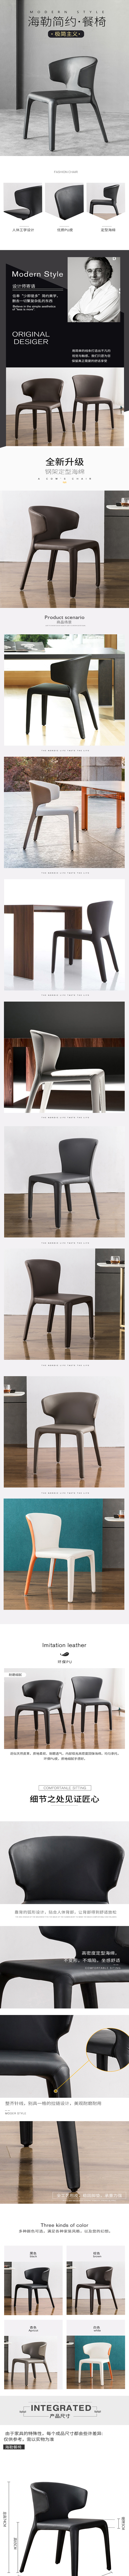 淘宝美工小酥饼家用餐厅椅子现代简约靠背椅北欧餐椅咖啡椅凳子详情页作品